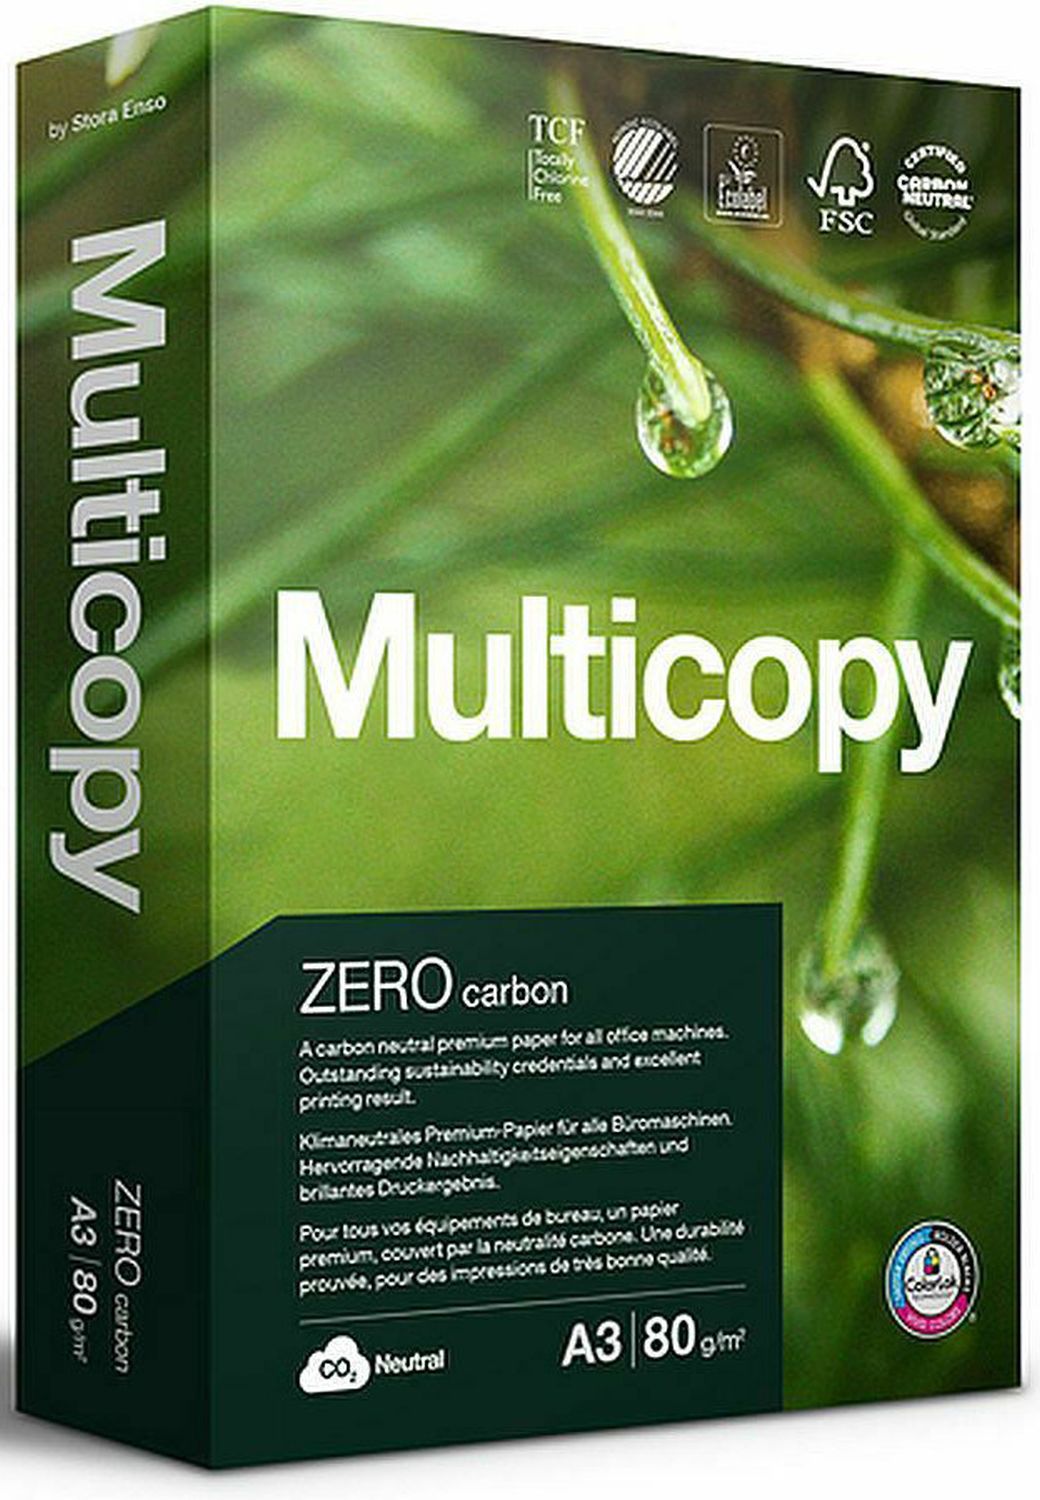 Kopierpapier Multicopy Zero 2100004936, Recyclingpapier DIN A3, 80 g/qm, hochweiß, 500 Blatt